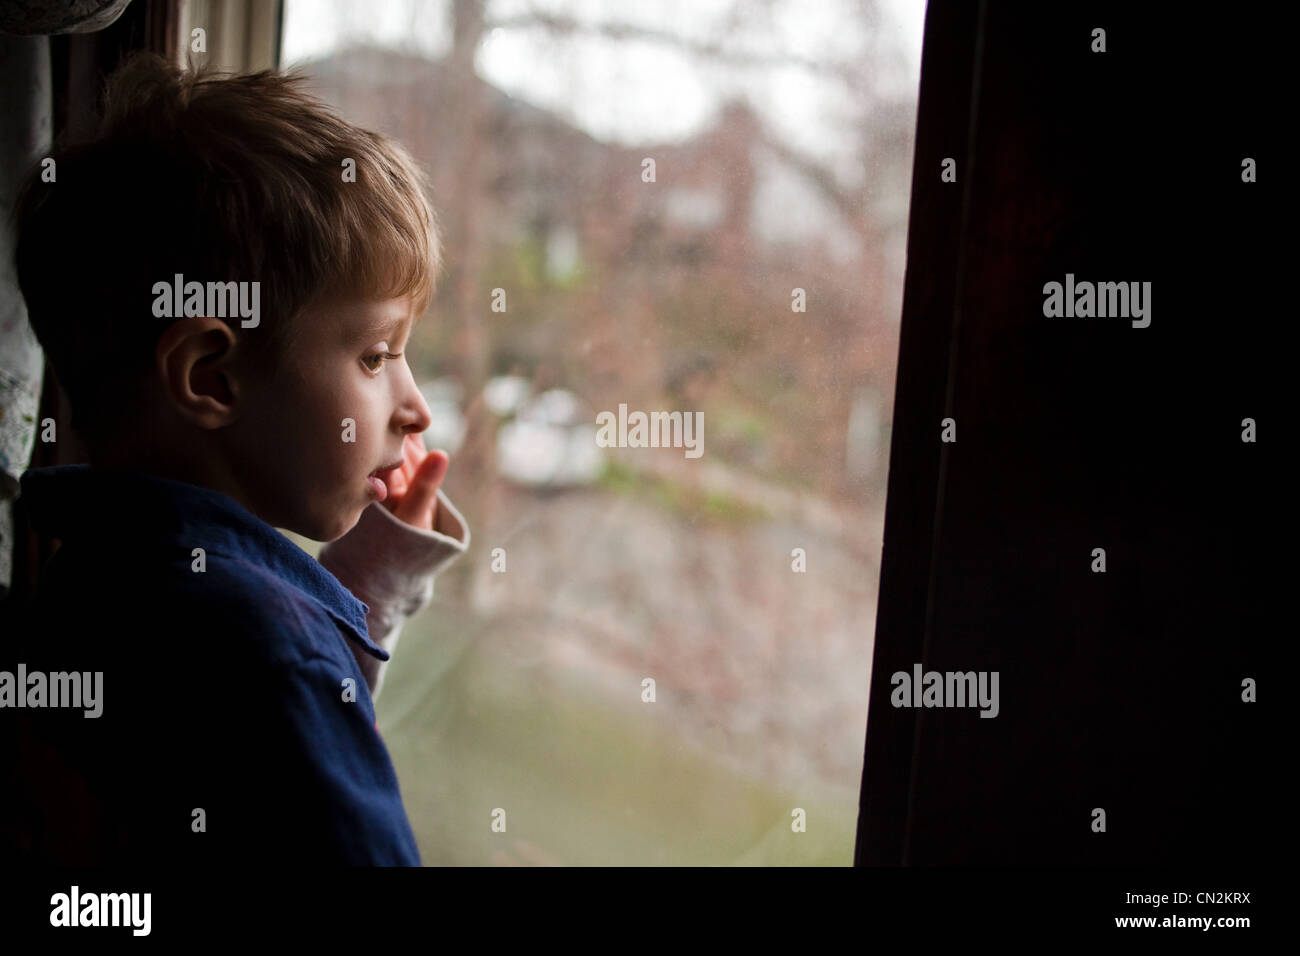 Jeune garçon à la recherche d'une fenêtre Banque D'Images